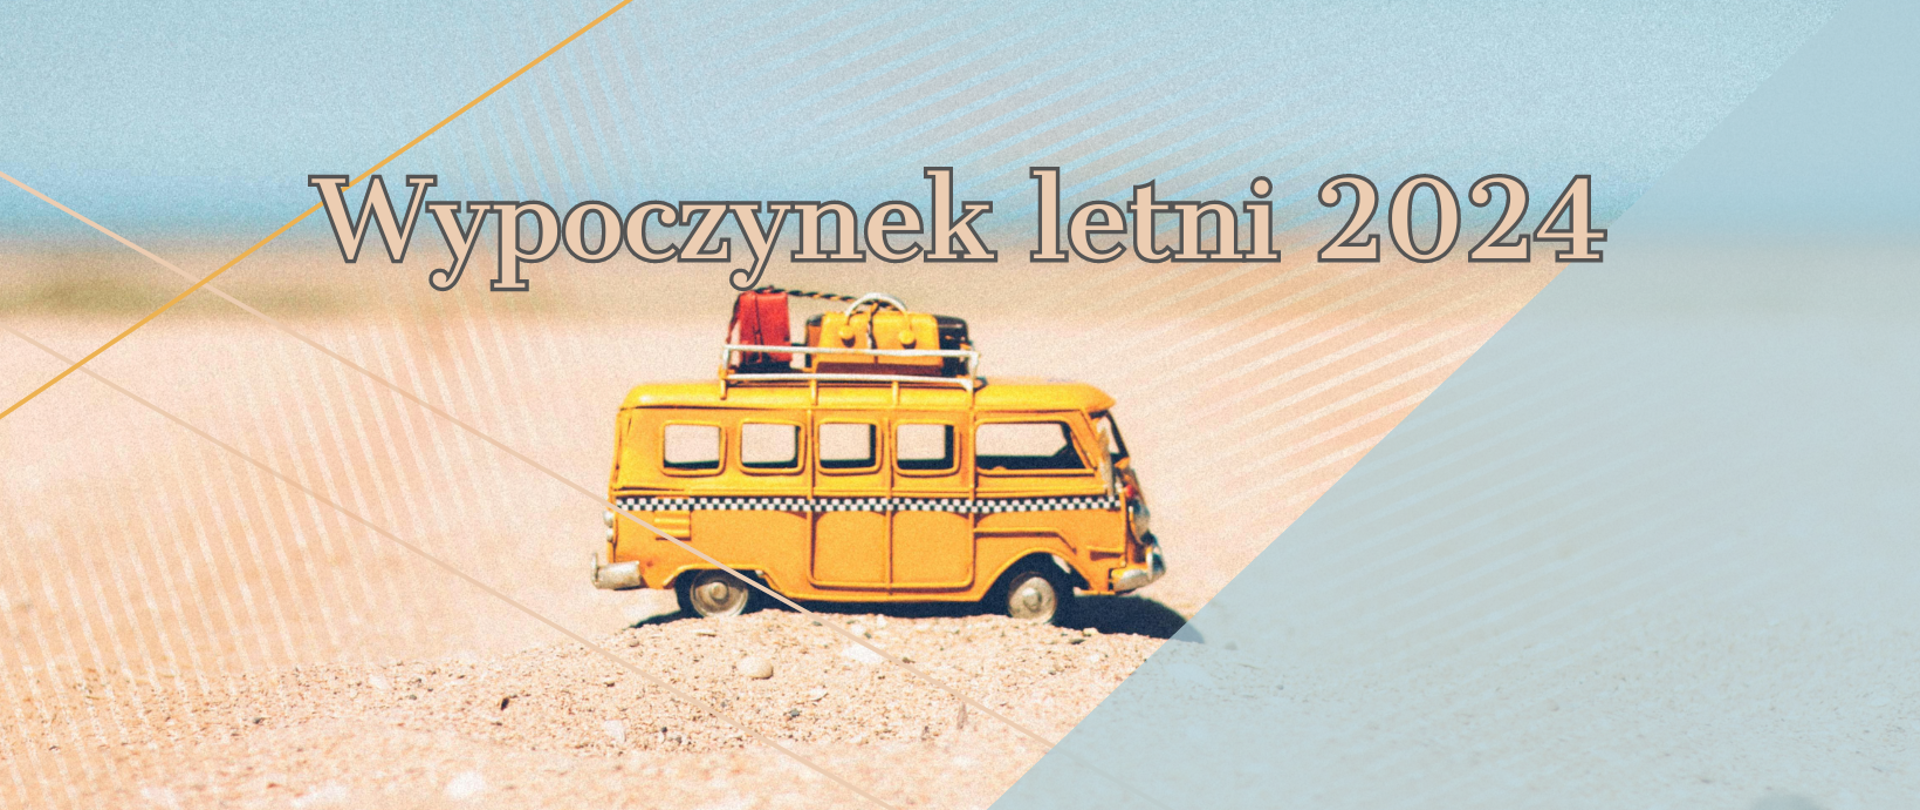 Na zdjęciu przedstawiona jest mała figurka żółtego autobusu, na którym znajdują się bagaże. Mała figurka autobusu postawiona jest na piaszczystej plaży z pięknym widokiem. 